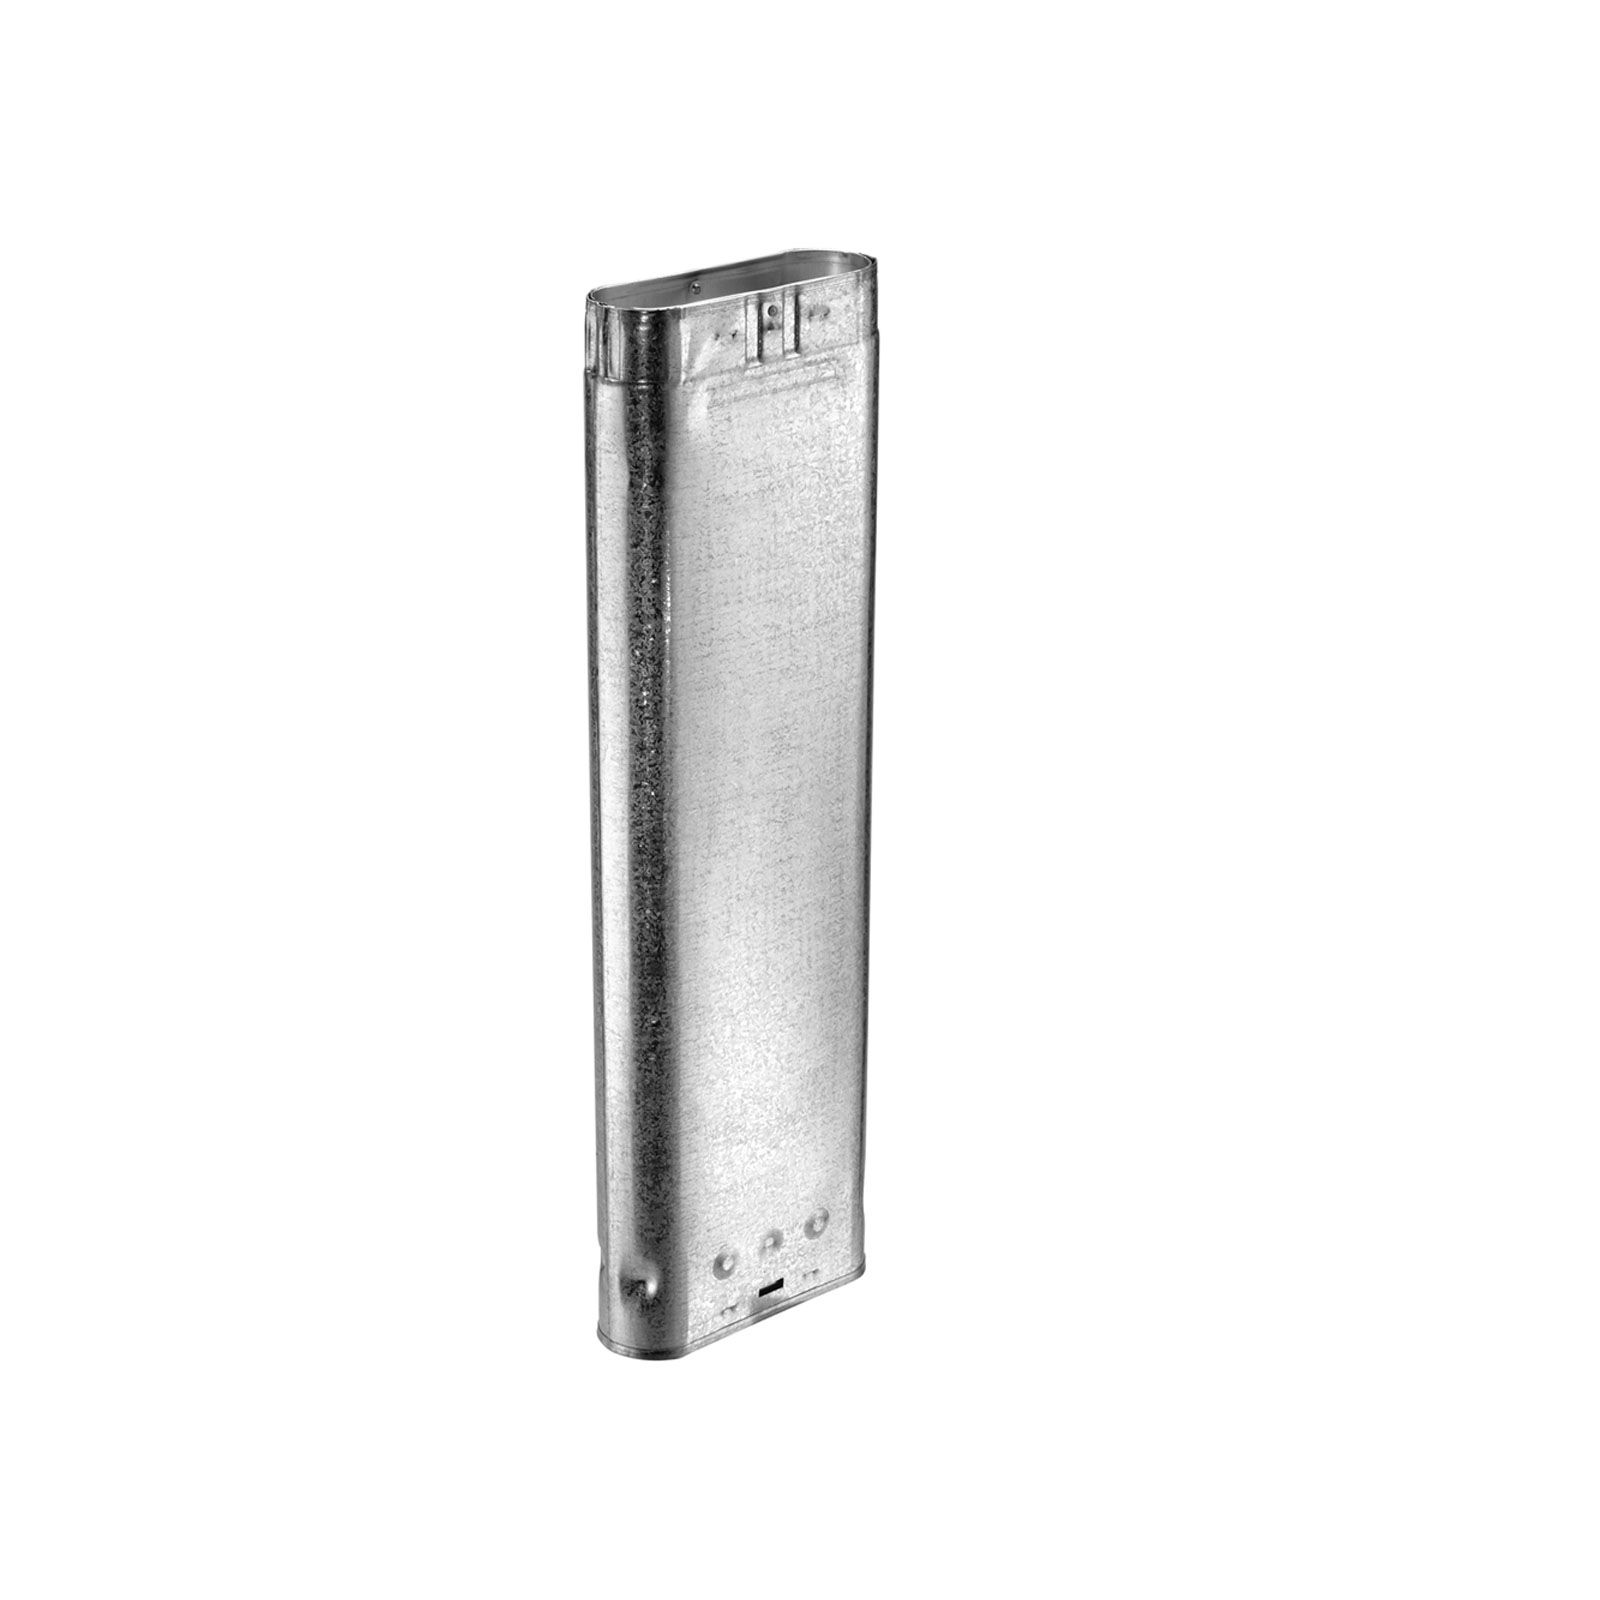 DuraVent 4GW18 - Aluminum 18" Length Oval Rigid Pipe with 4" Inner Diameter